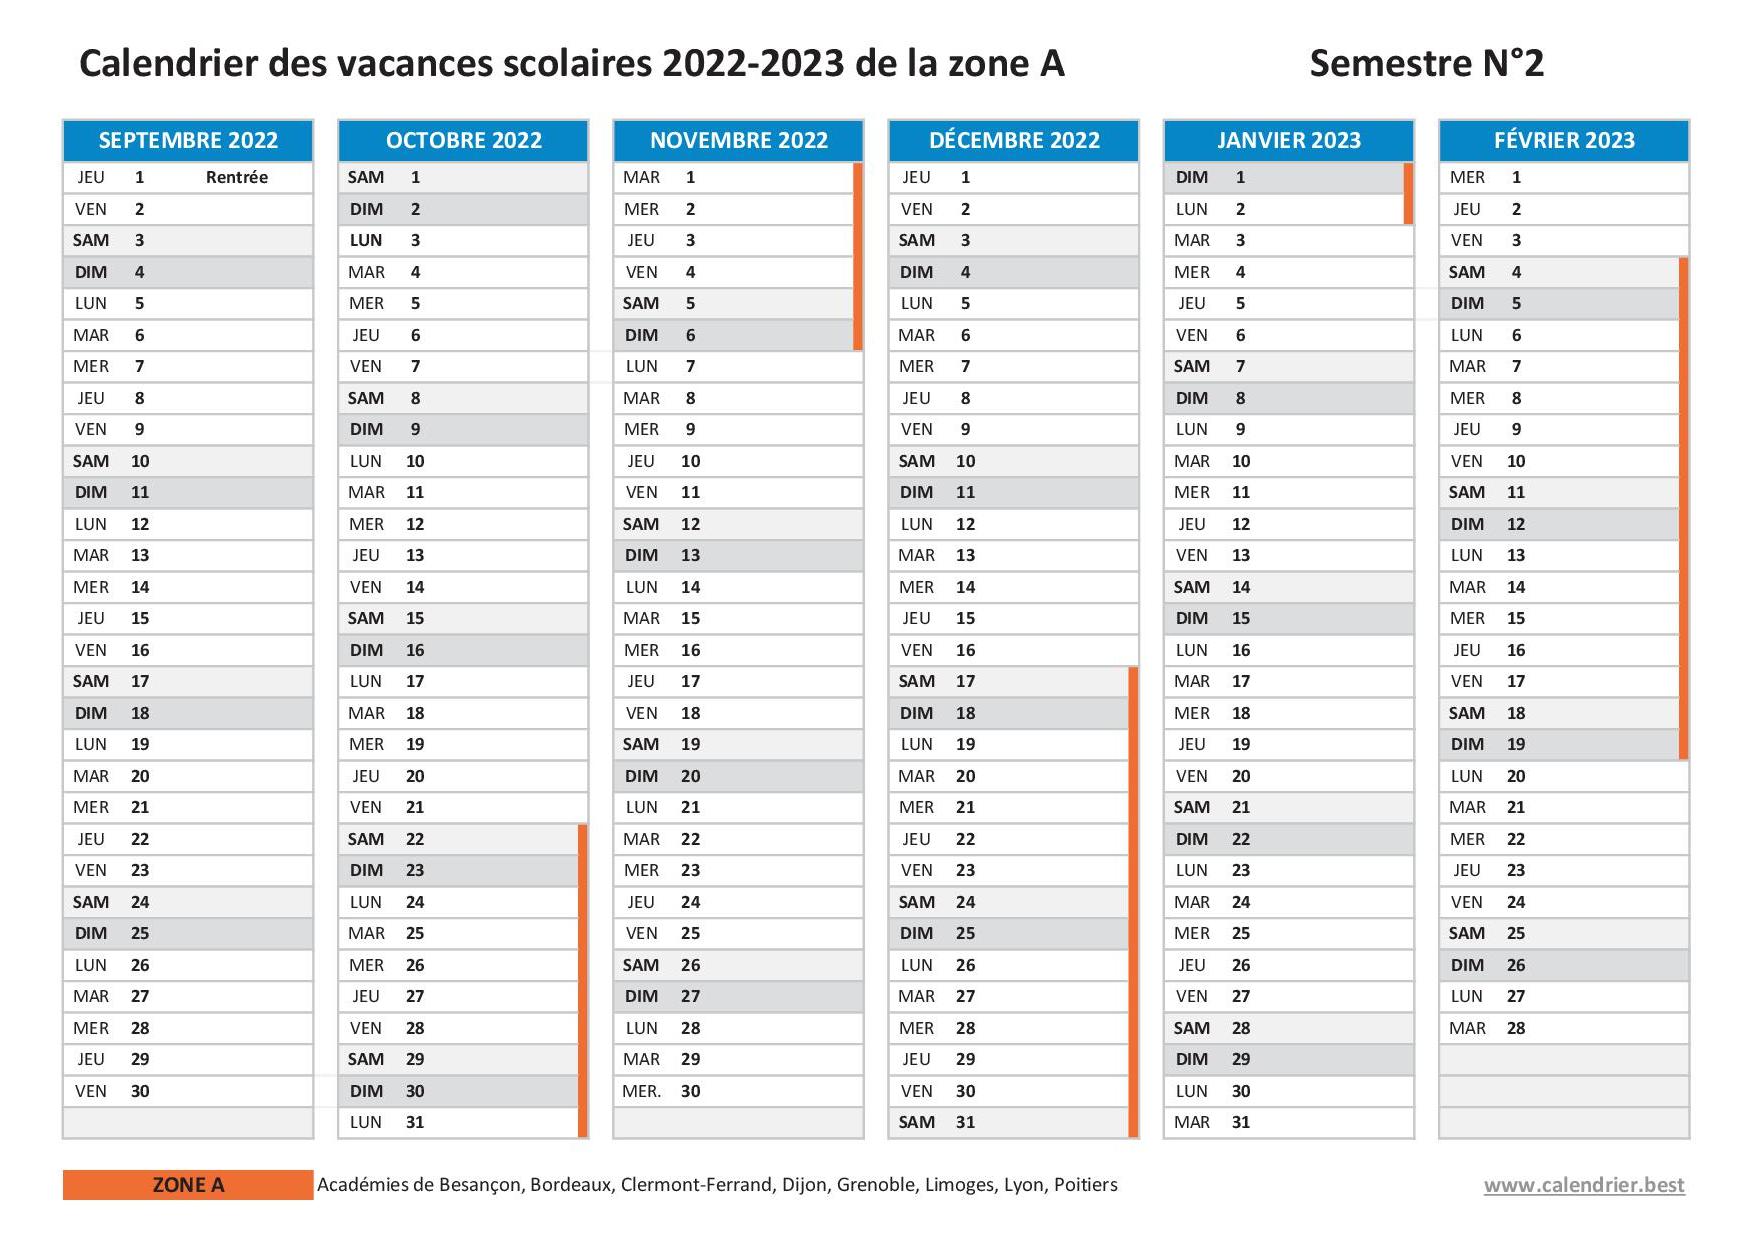 Vacances scolaires 2022 2023 Besançon : dates et calendrier scolaire  2022-2023